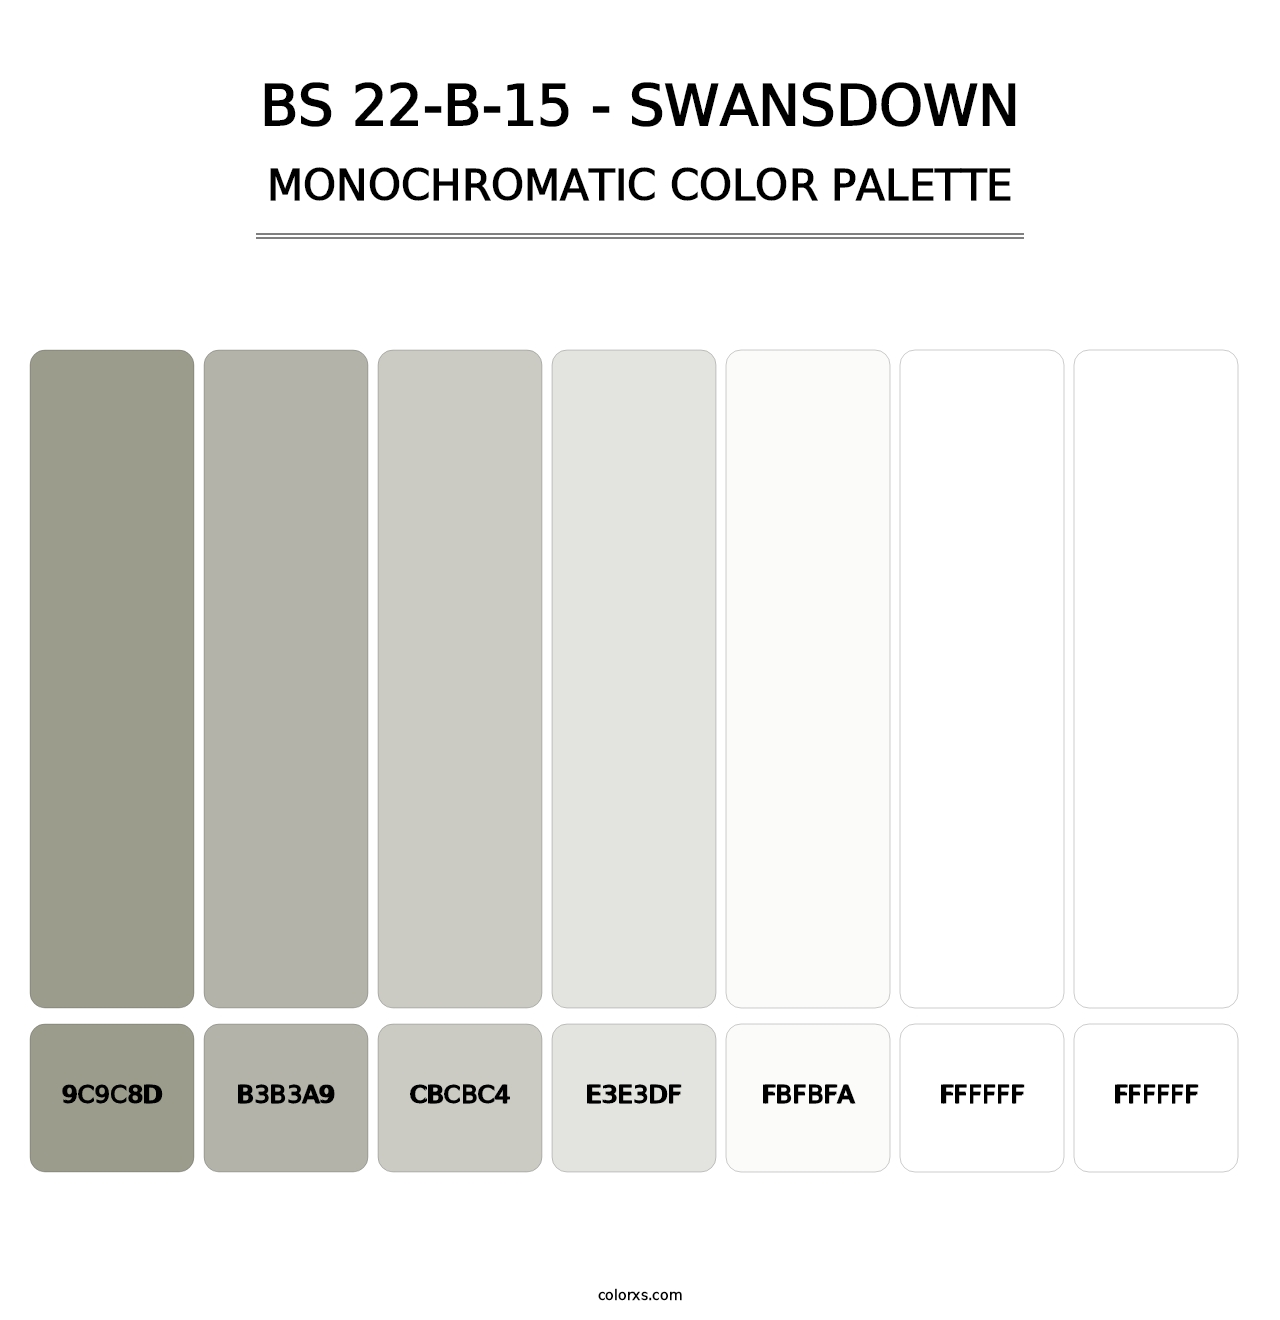 BS 22-B-15 - Swansdown - Monochromatic Color Palette